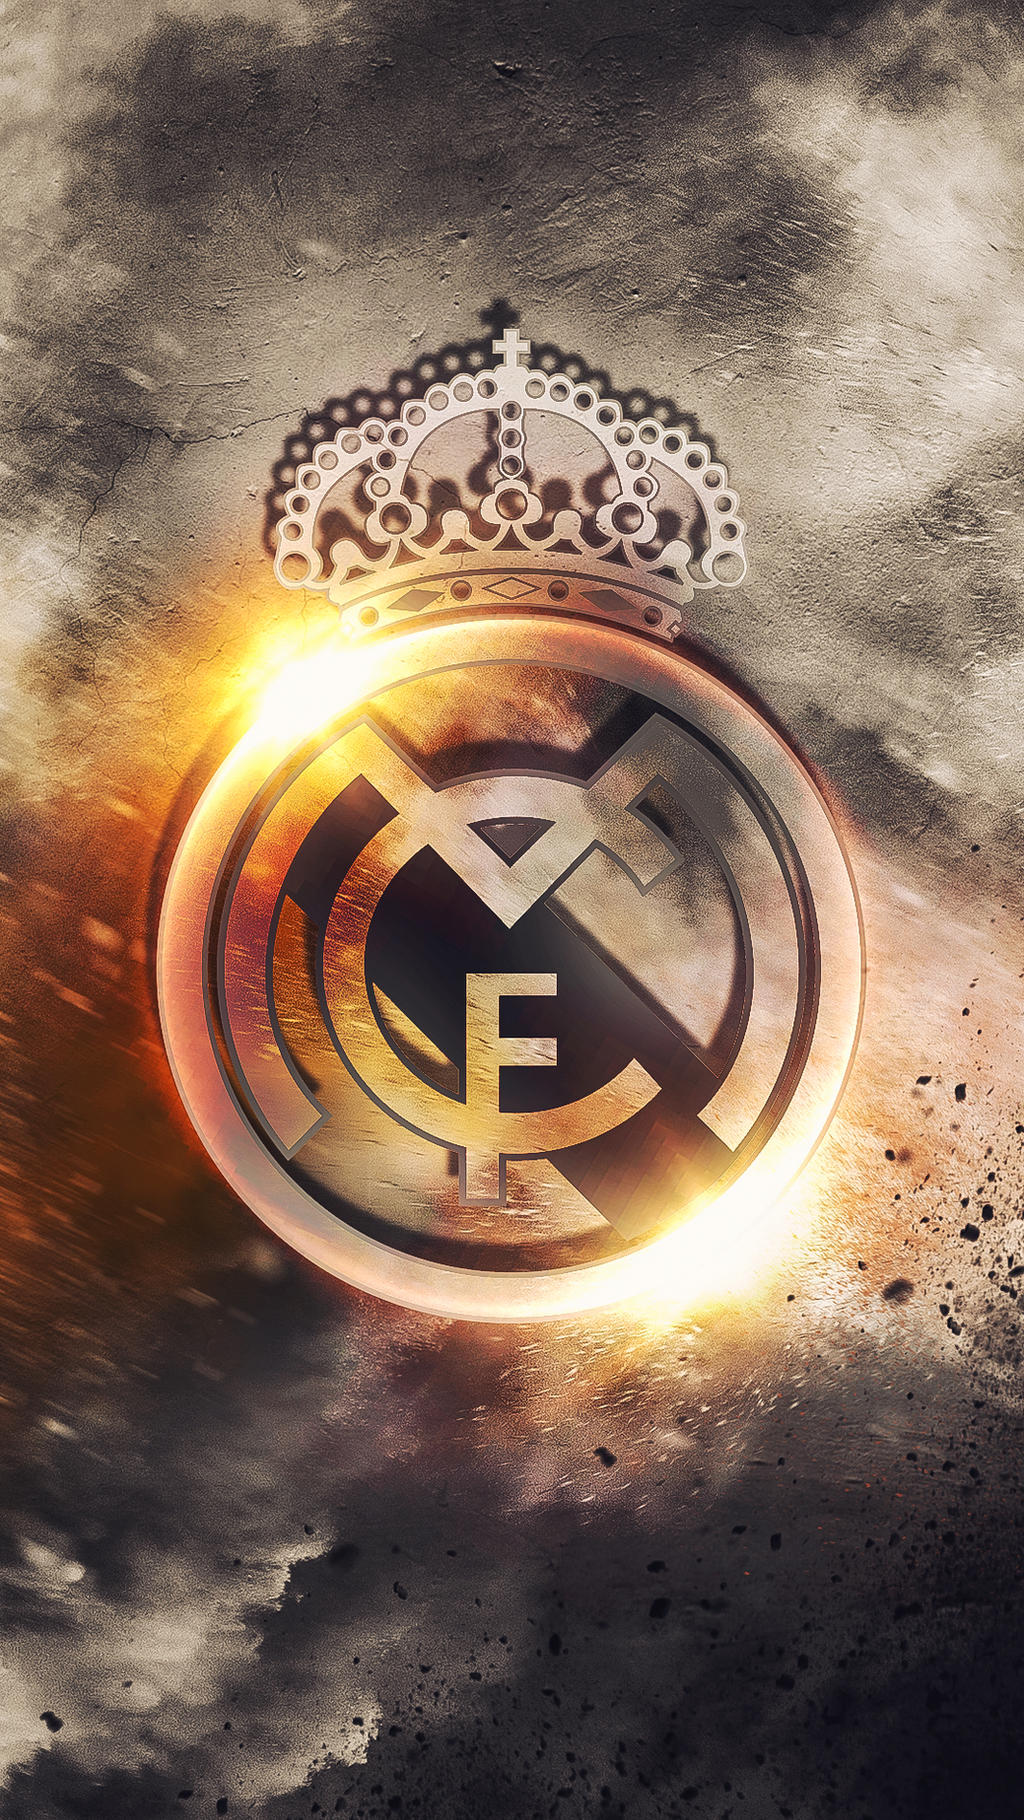 Real Madrid - HD Logo Wallpaper by Kerimov23 on DeviantArt